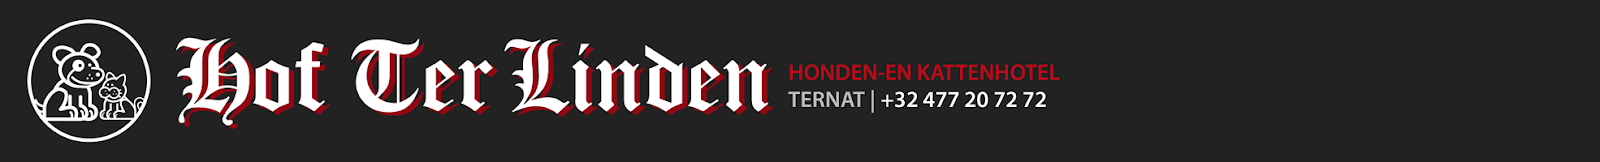 Hof Ter Linden | Katten-en Hondenhotel